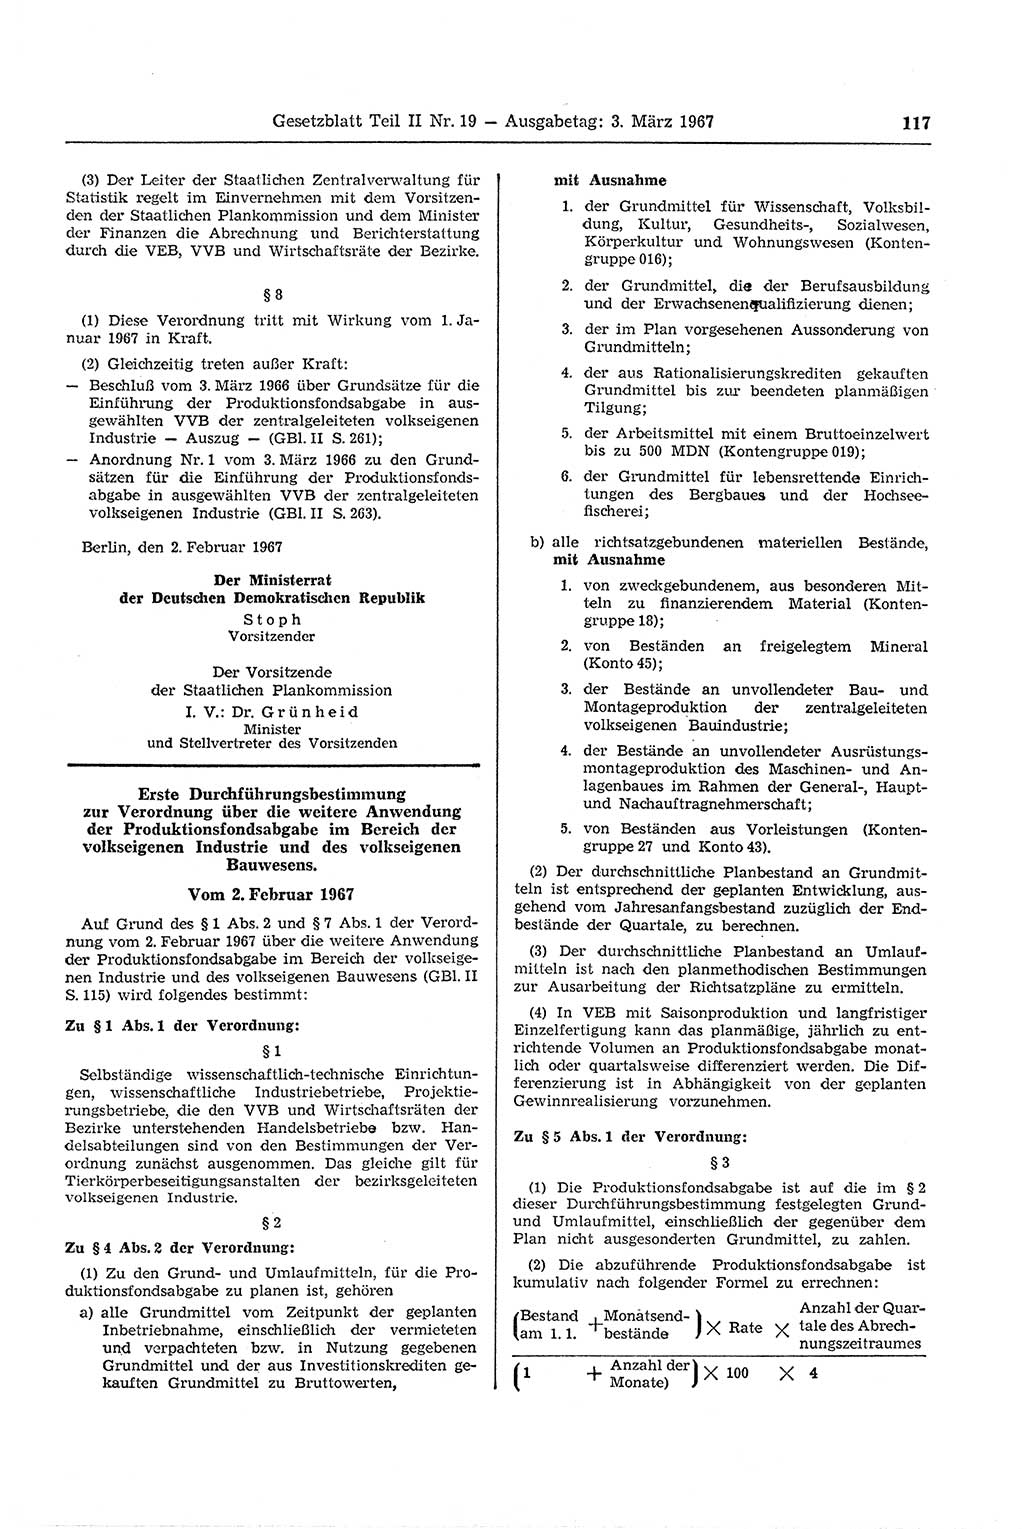 Gesetzblatt (GBl.) der Deutschen Demokratischen Republik (DDR) Teil ⅠⅠ 1967, Seite 117 (GBl. DDR ⅠⅠ 1967, S. 117)